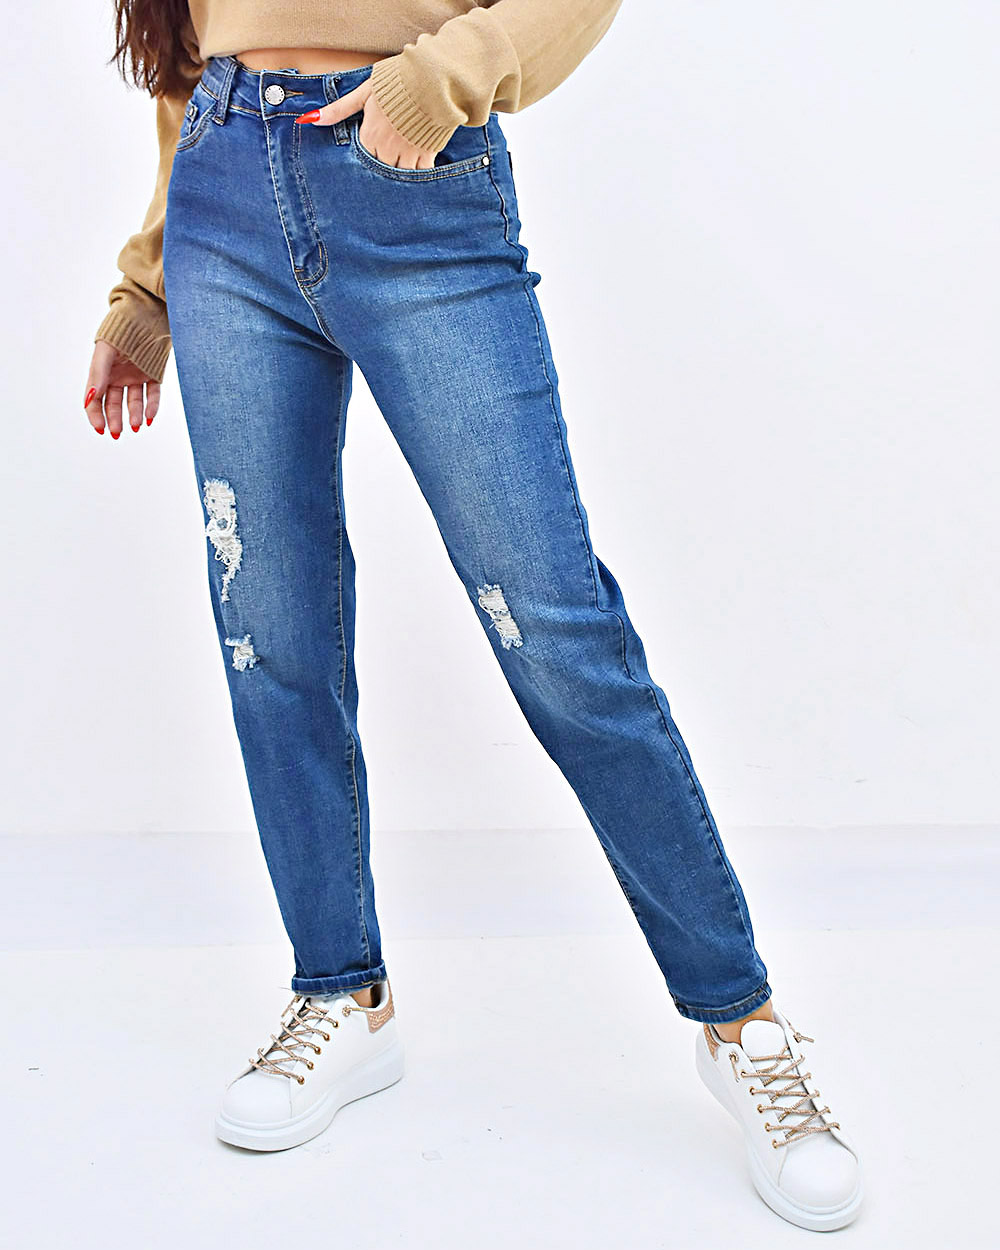 Γυναικείο Παντελόνι τζιν μπλε με σκισίματα